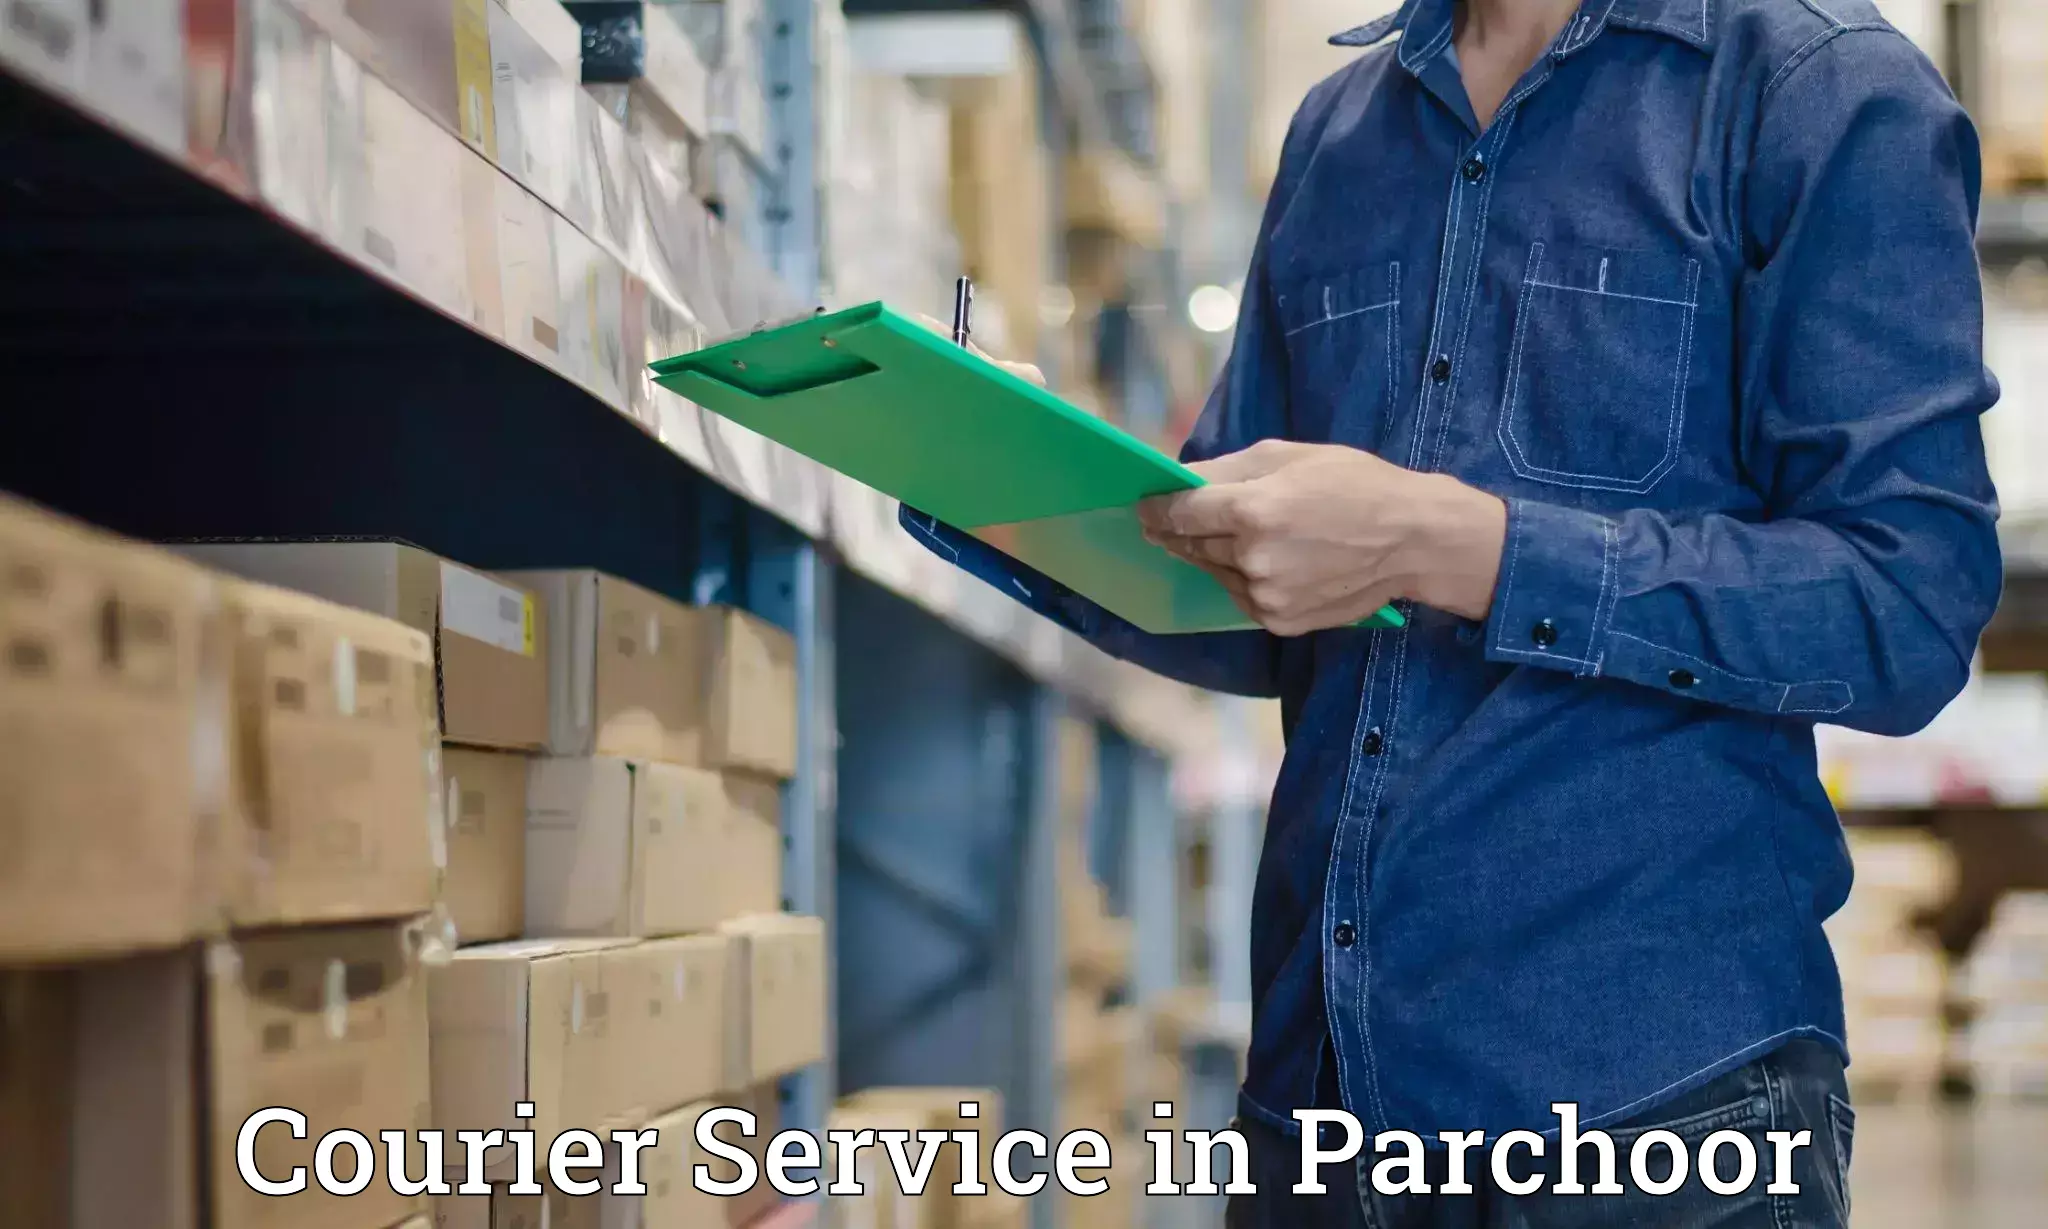 Cargo delivery service in Parchoor